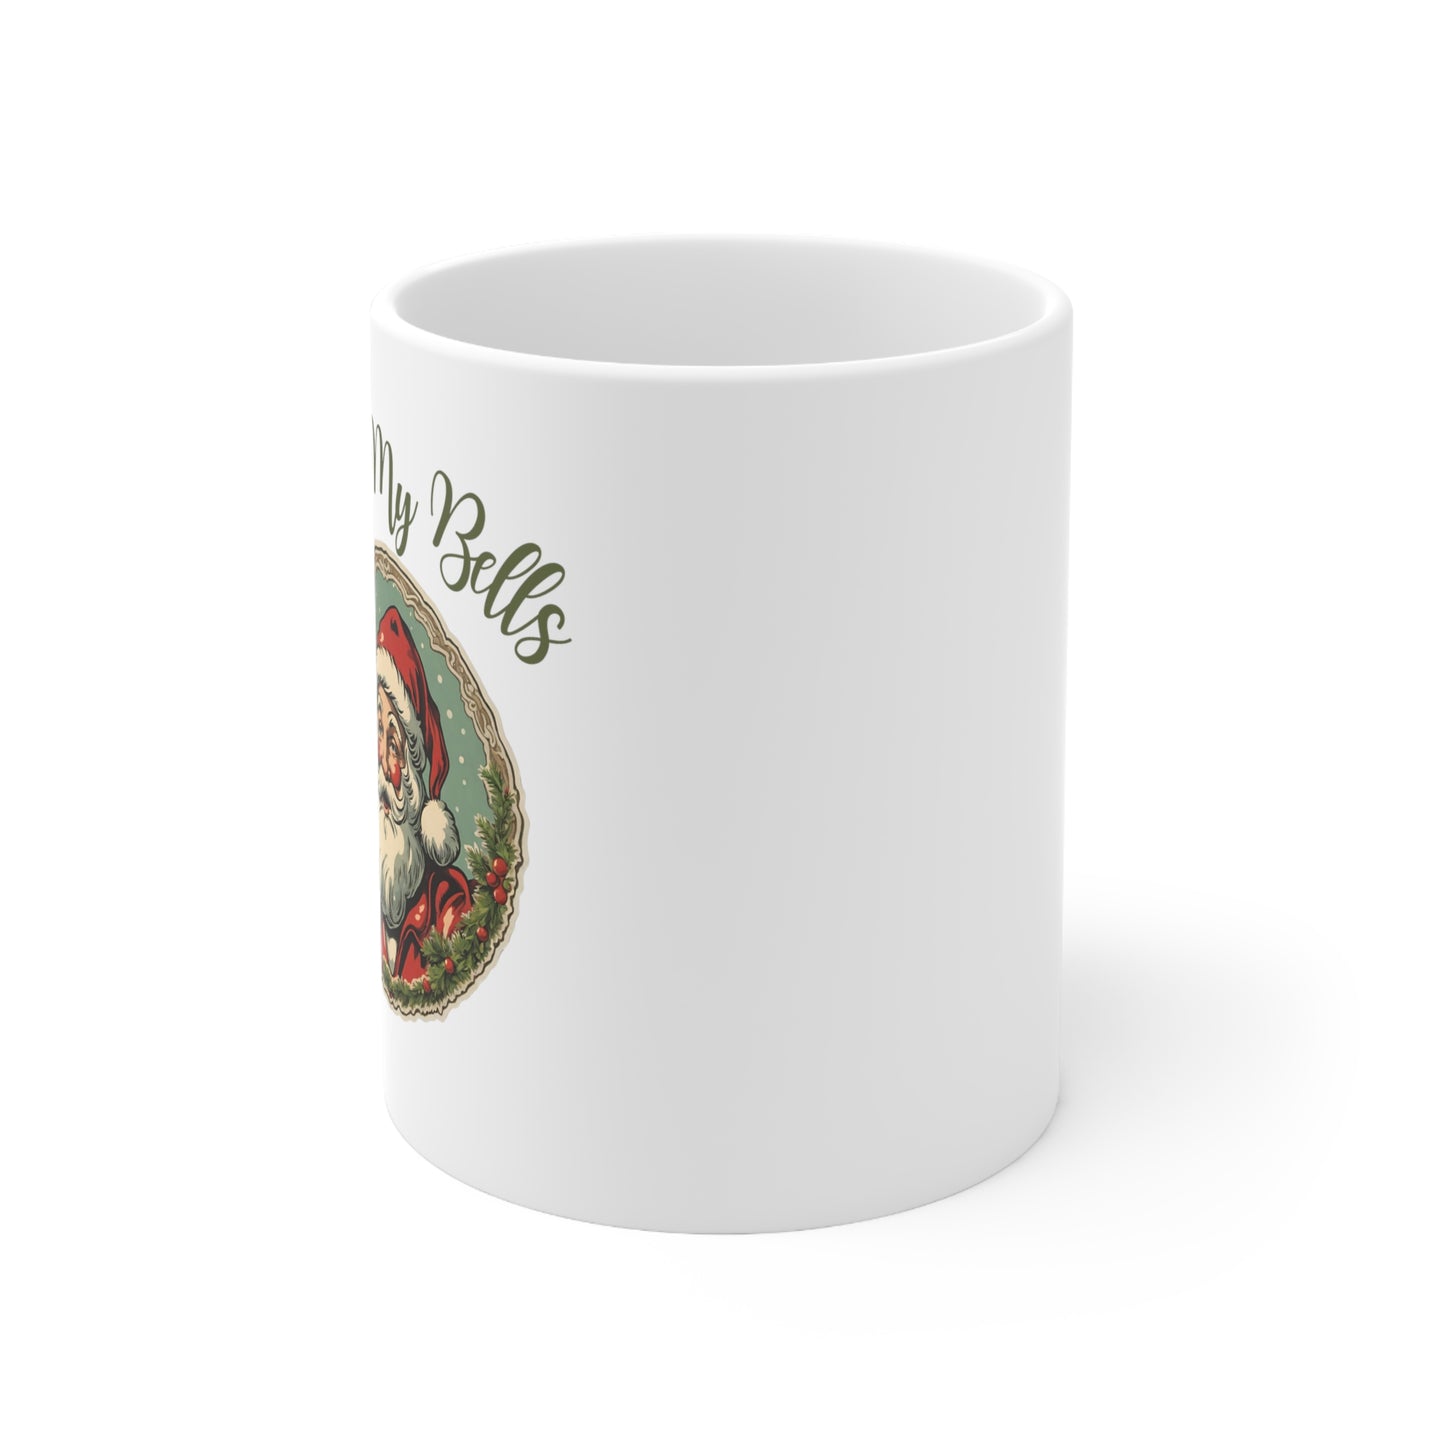 Jingle My Bells - Ceramic Mug 11oz, Christmas Mug, Christmas Gift